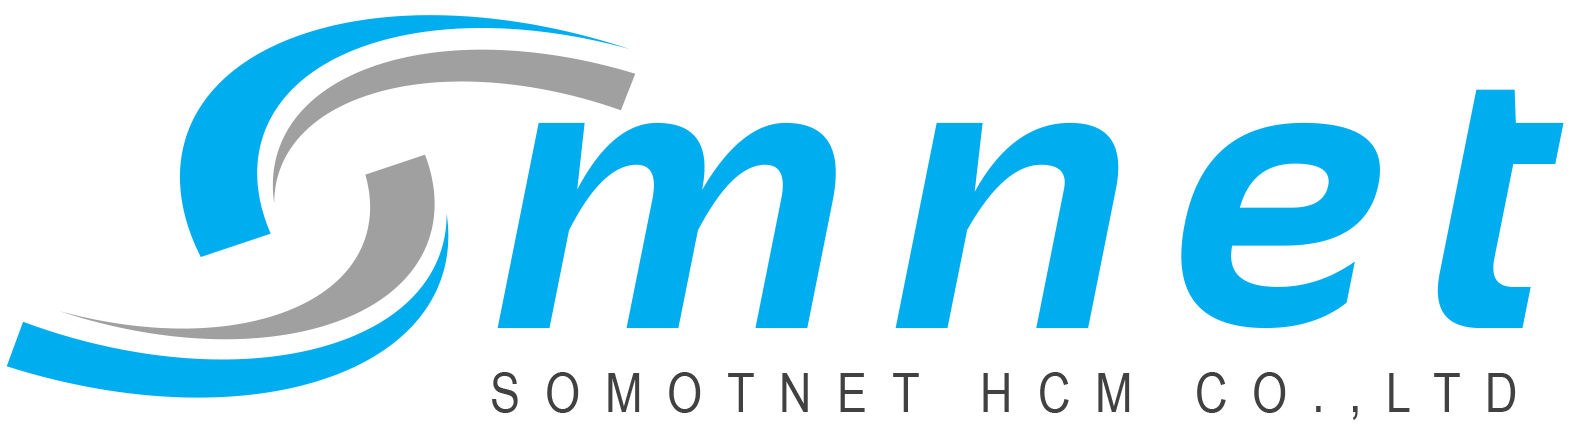 Công ty TNHH SOMOTNET HCM